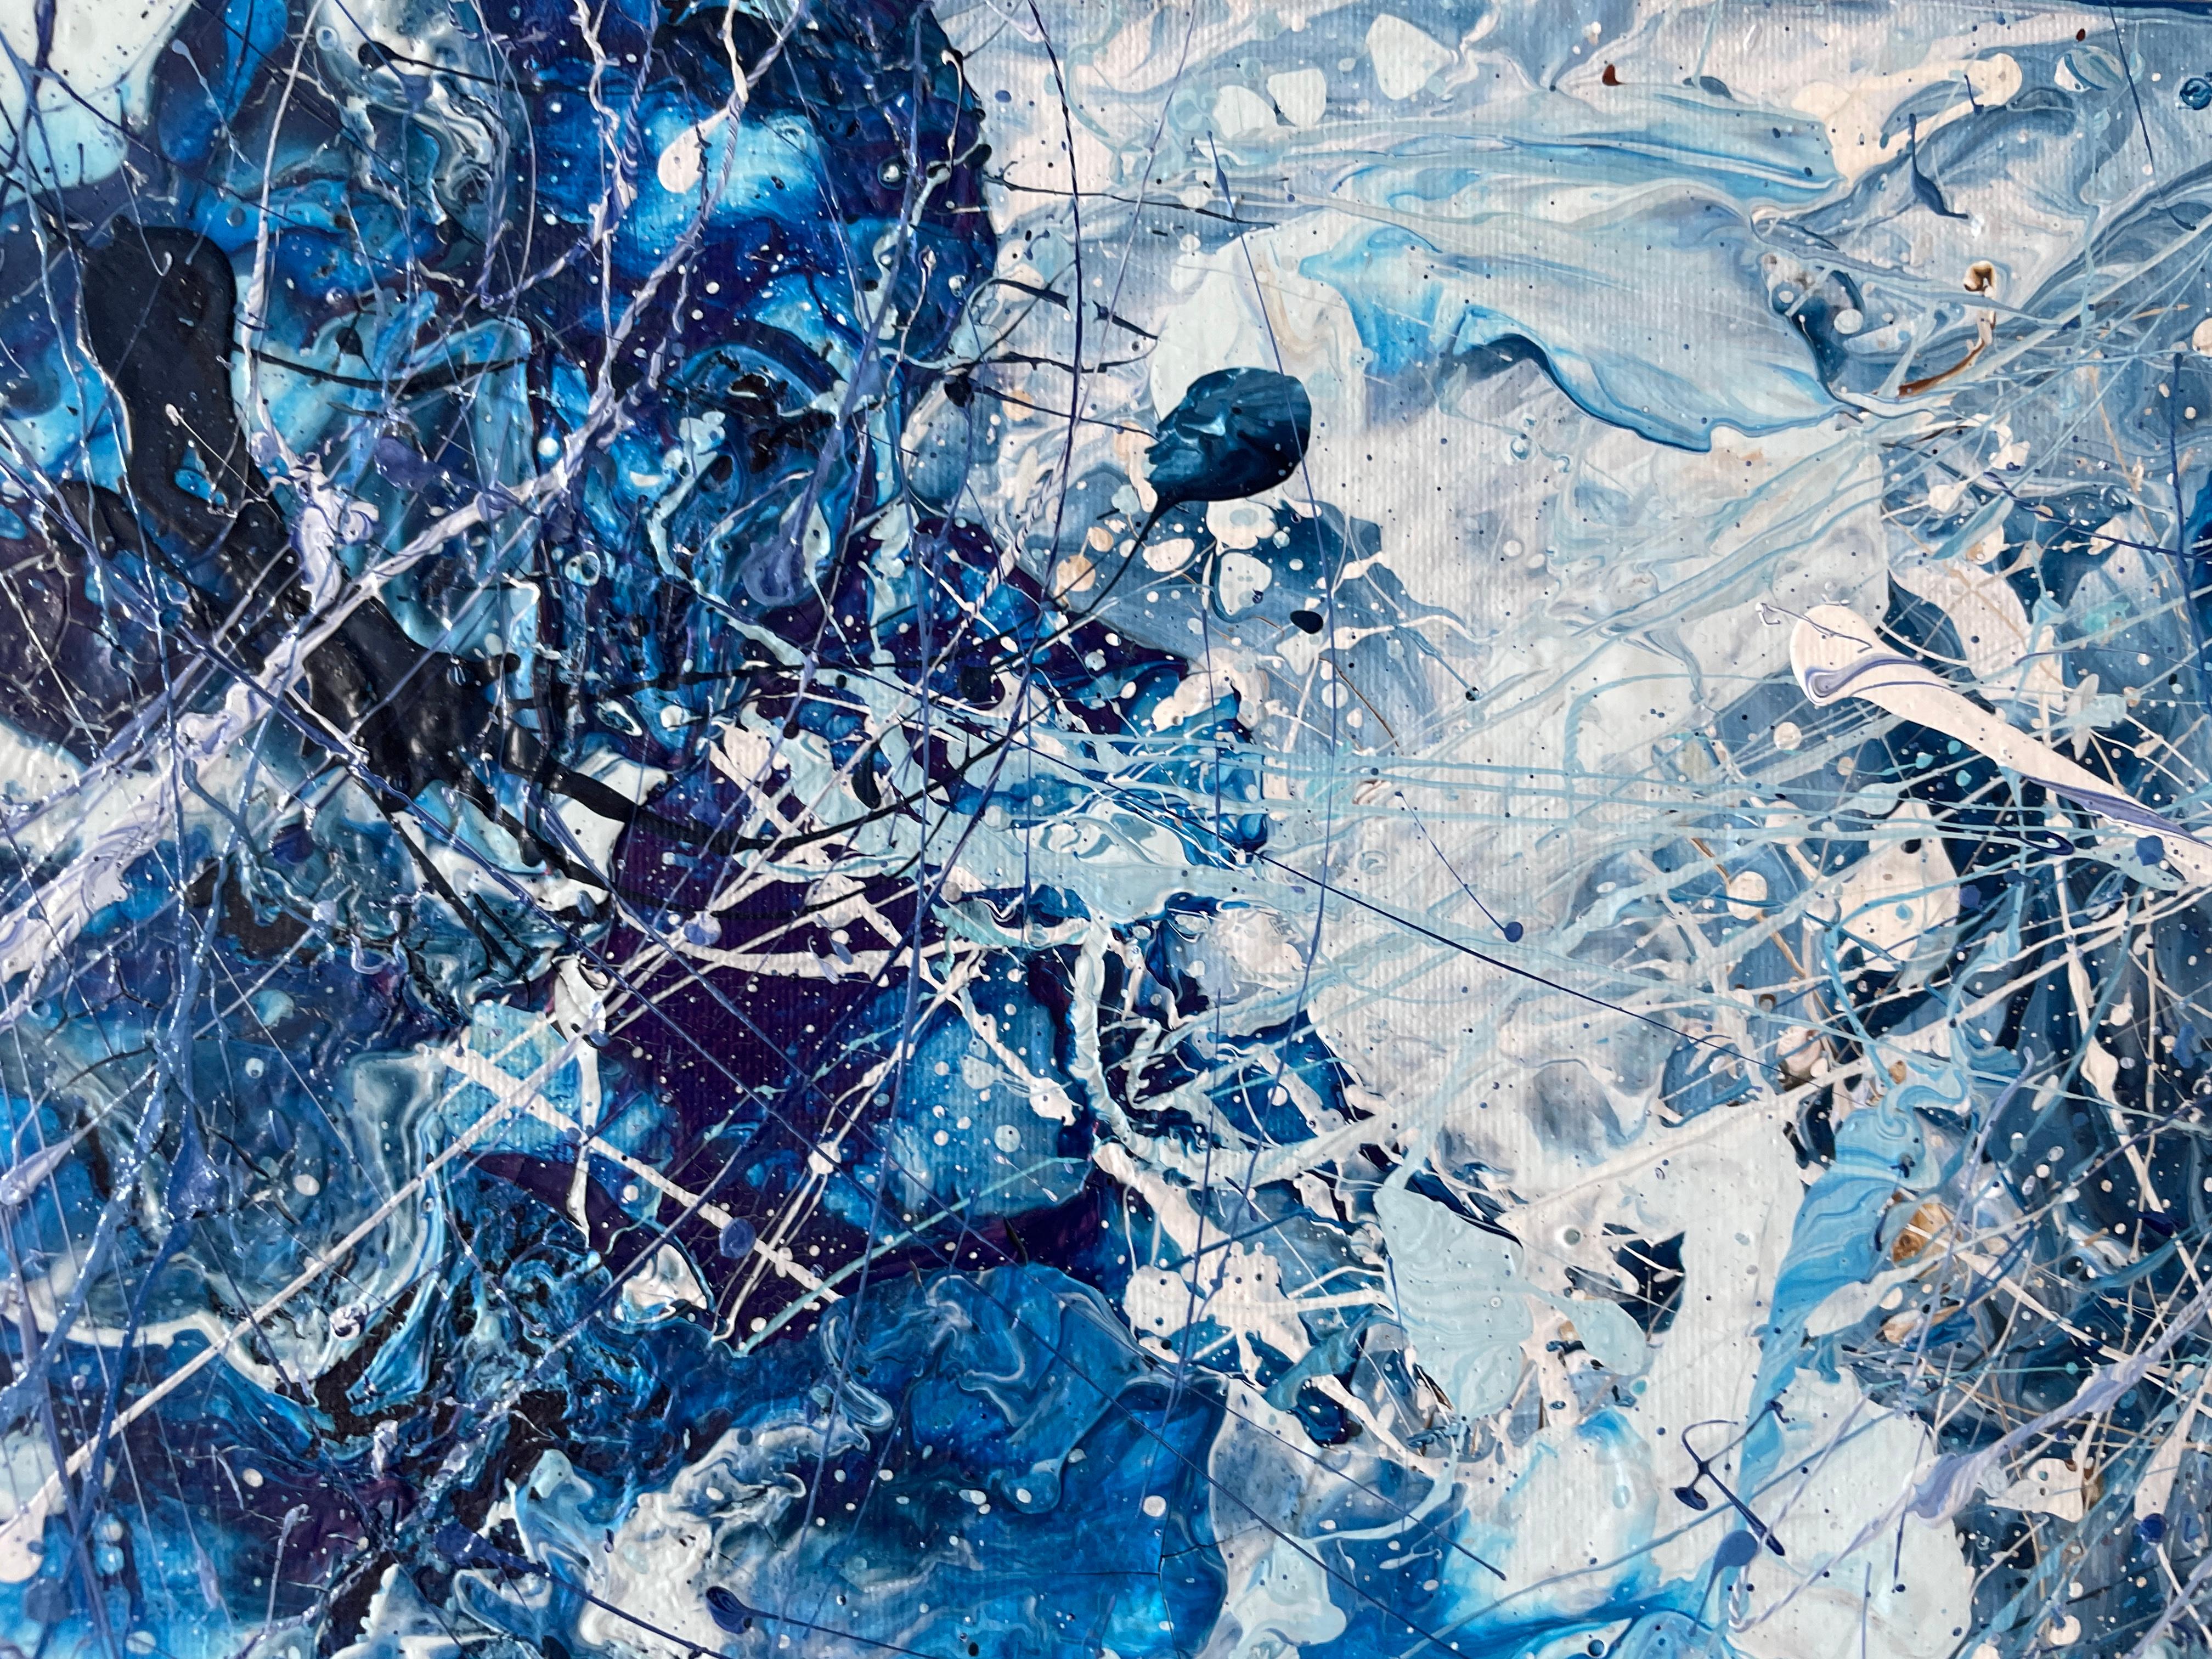 
In diesem ausdrucksstarken Action Painting verschmilzt ein Wirbelsturm aus fesselnden Blautönen zu einer atemberaubenden Meereslandschaft in Aufruhr. Die intensiven Blautöne, von tiefem Saphir bis zu lebhaftem Türkis, formen stürmische Wellen, die